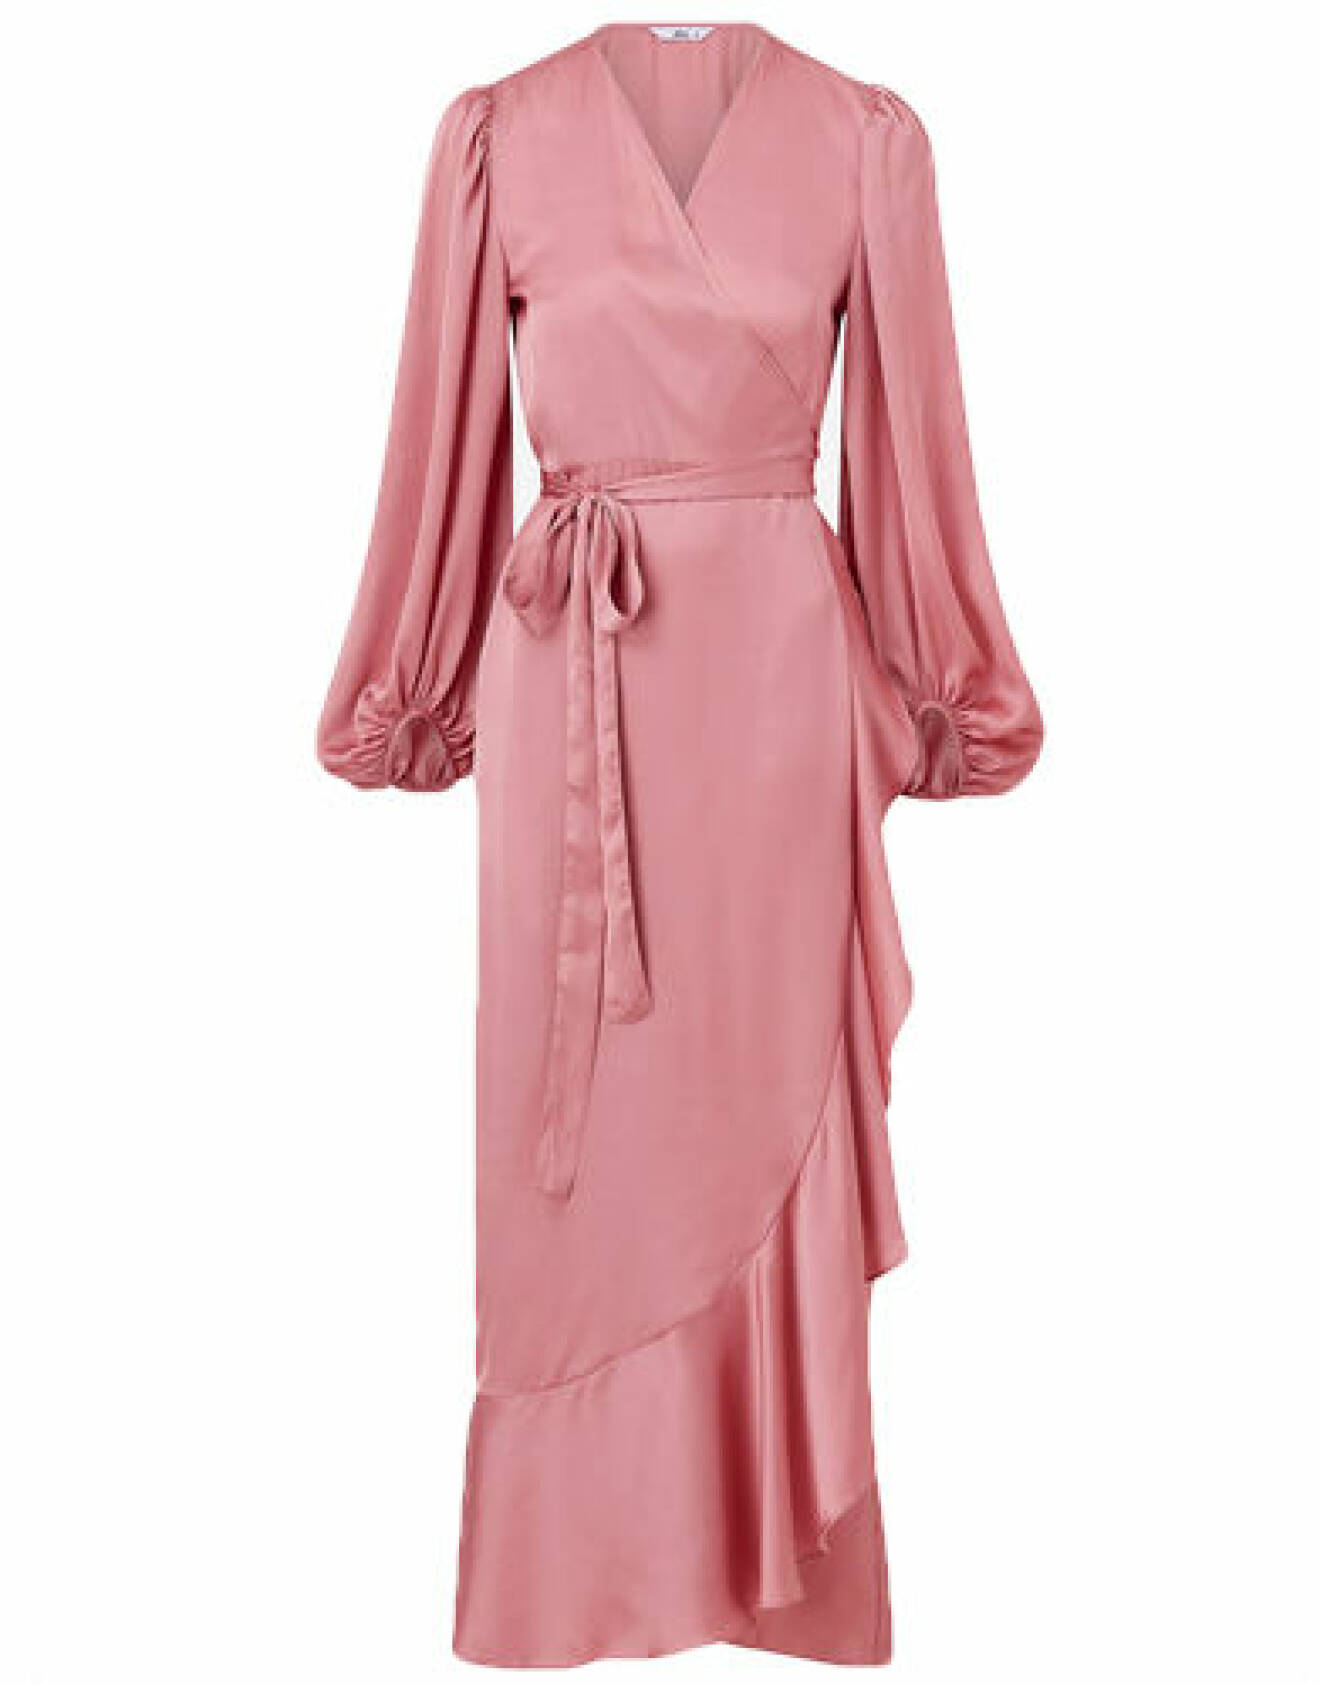 Rosa glansig klänning från Ellos Collection